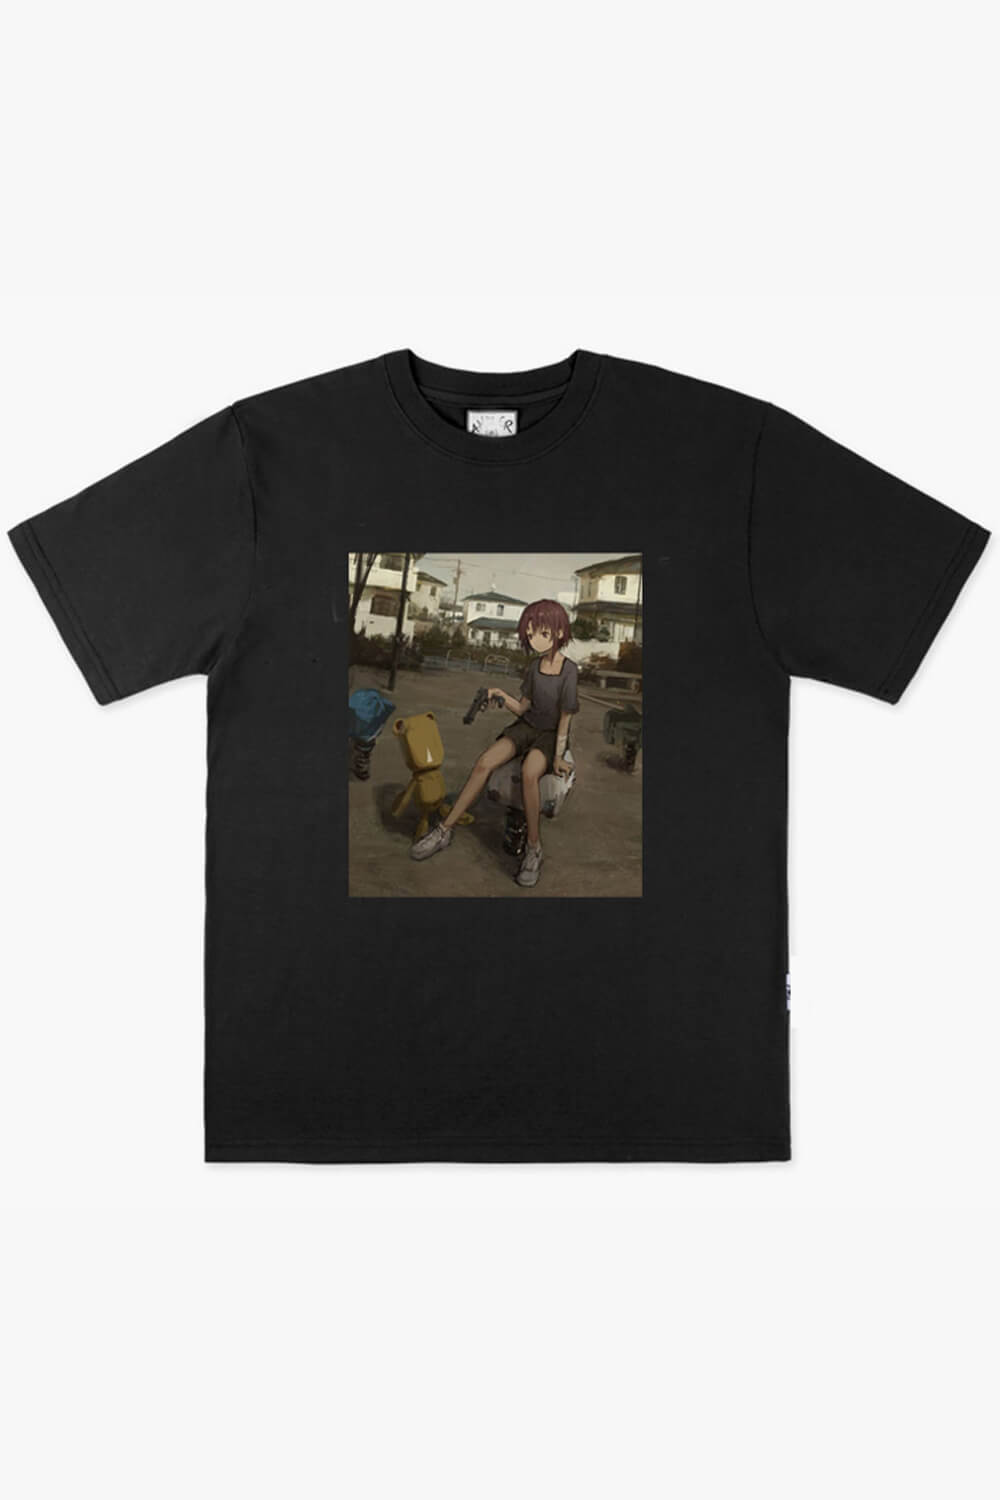 Dullcore Anime Girl with Gun Morute T-Shirt